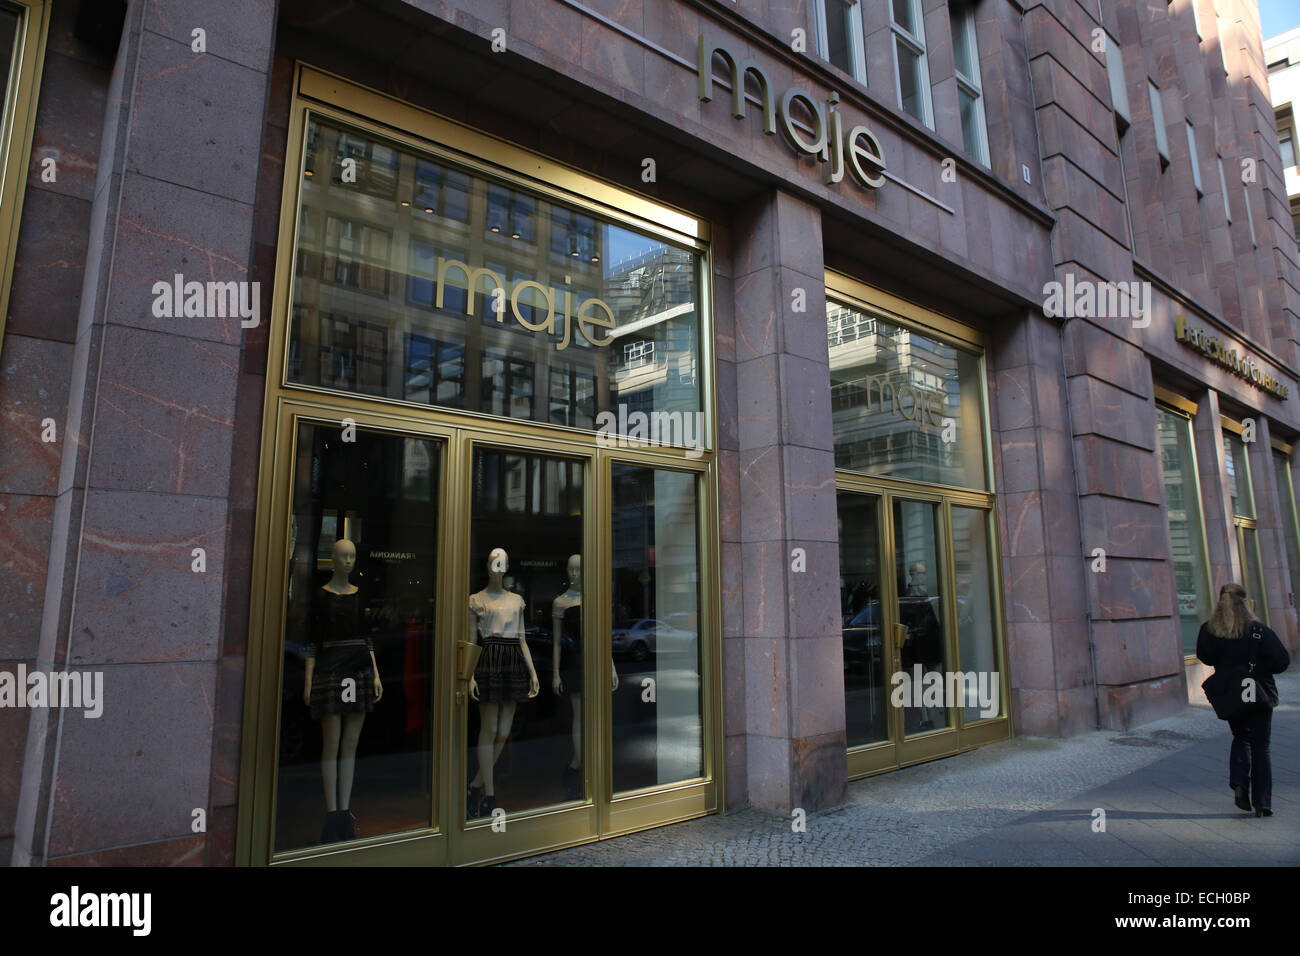 maje designer clothing store europe Stock Photo